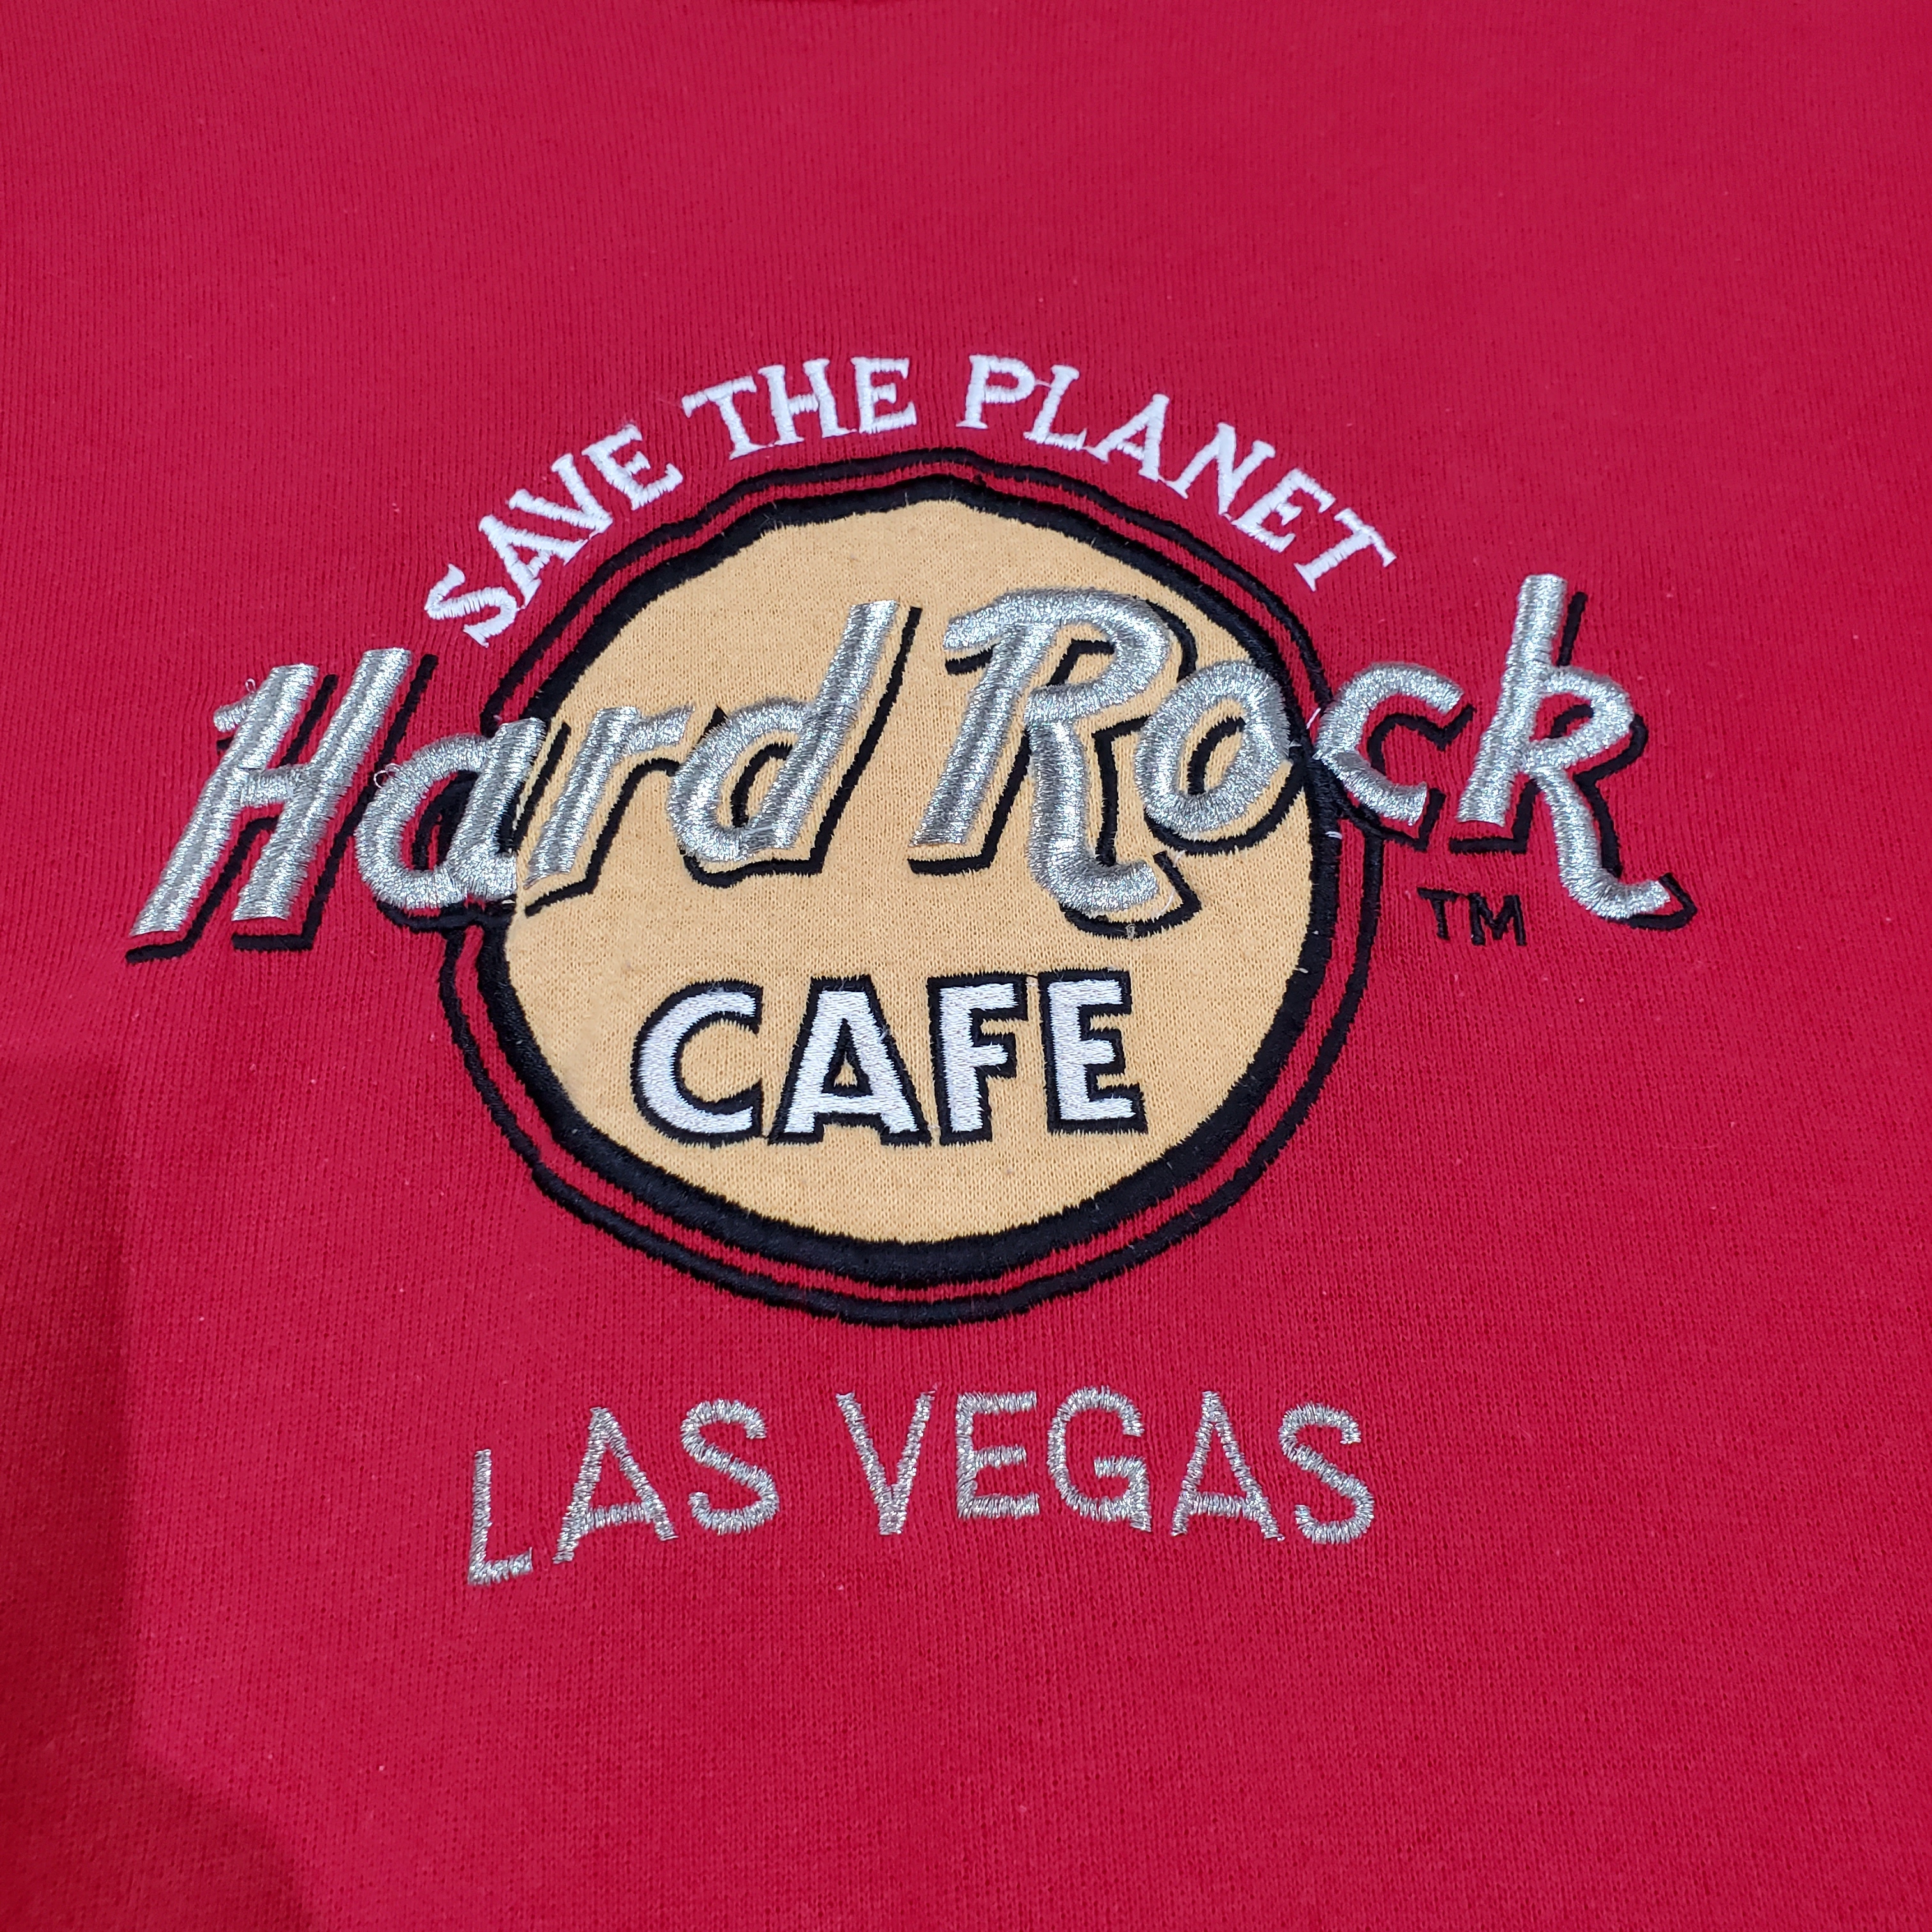 lee hardrockcafe ハードロックカフェ アメリカ製スウェット 古着